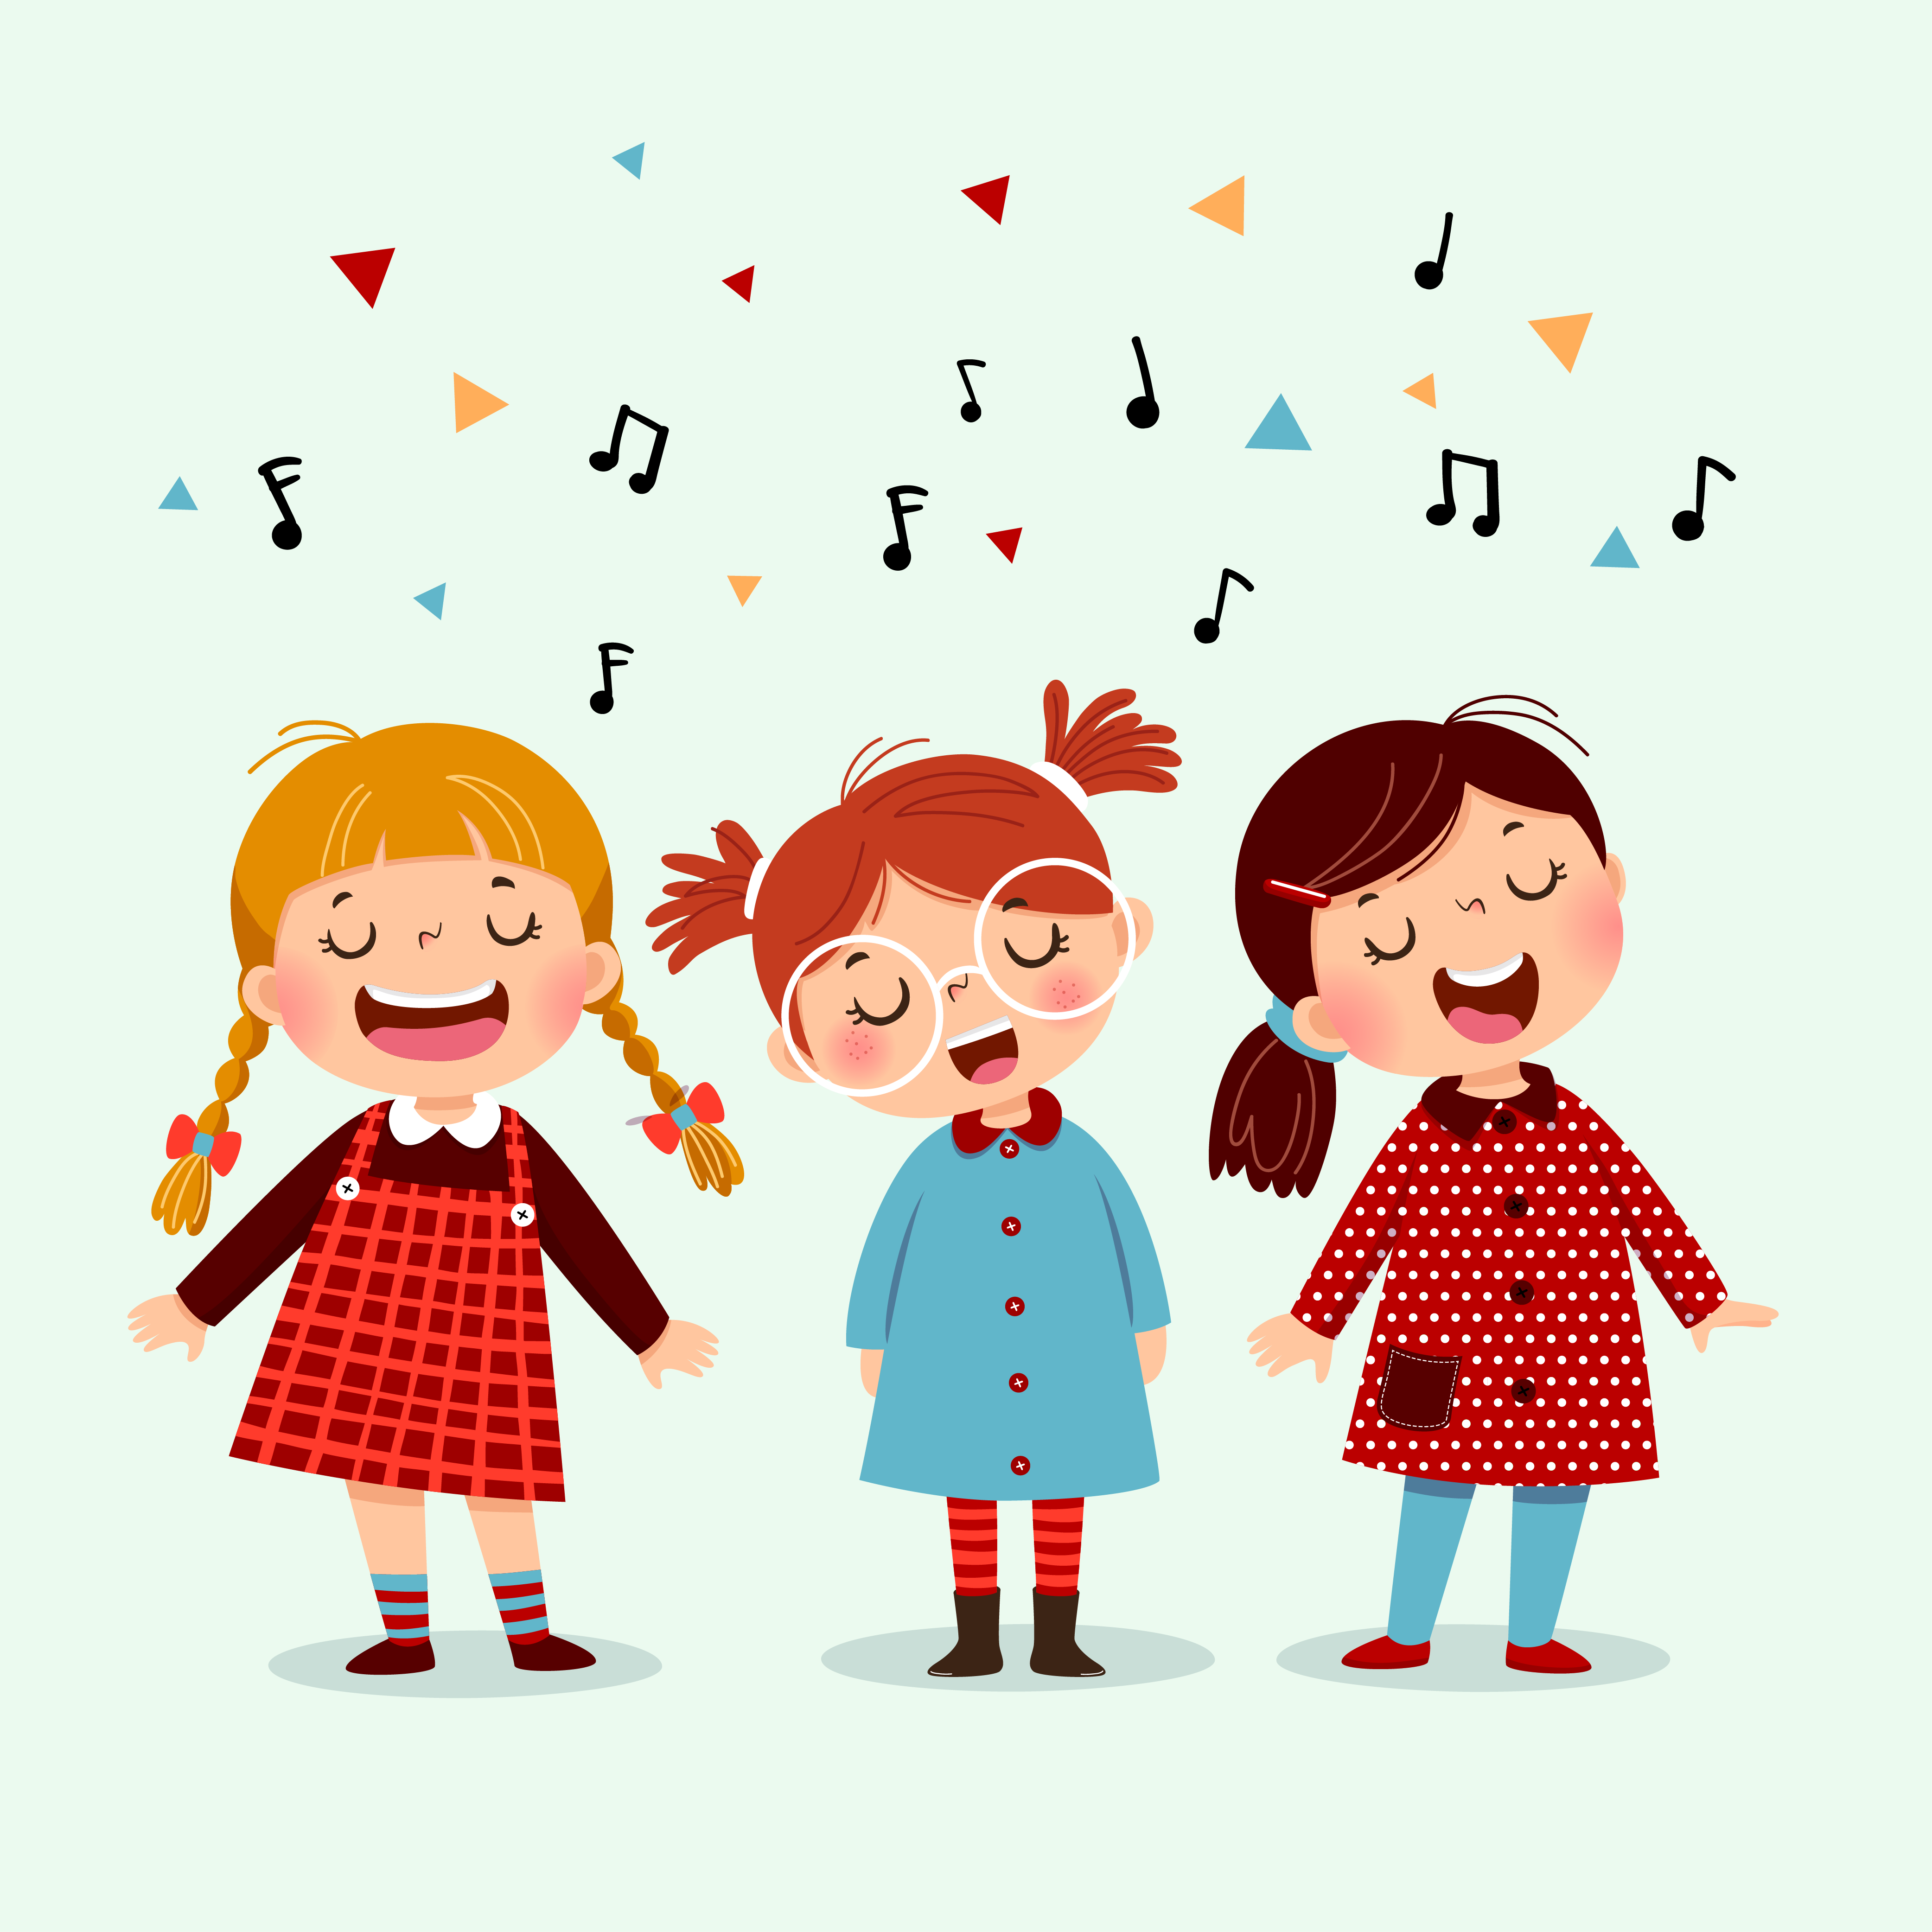 Ligadura cada vez Penélope Las canciones ayudan a promover el lenguaje infantil - SCDE